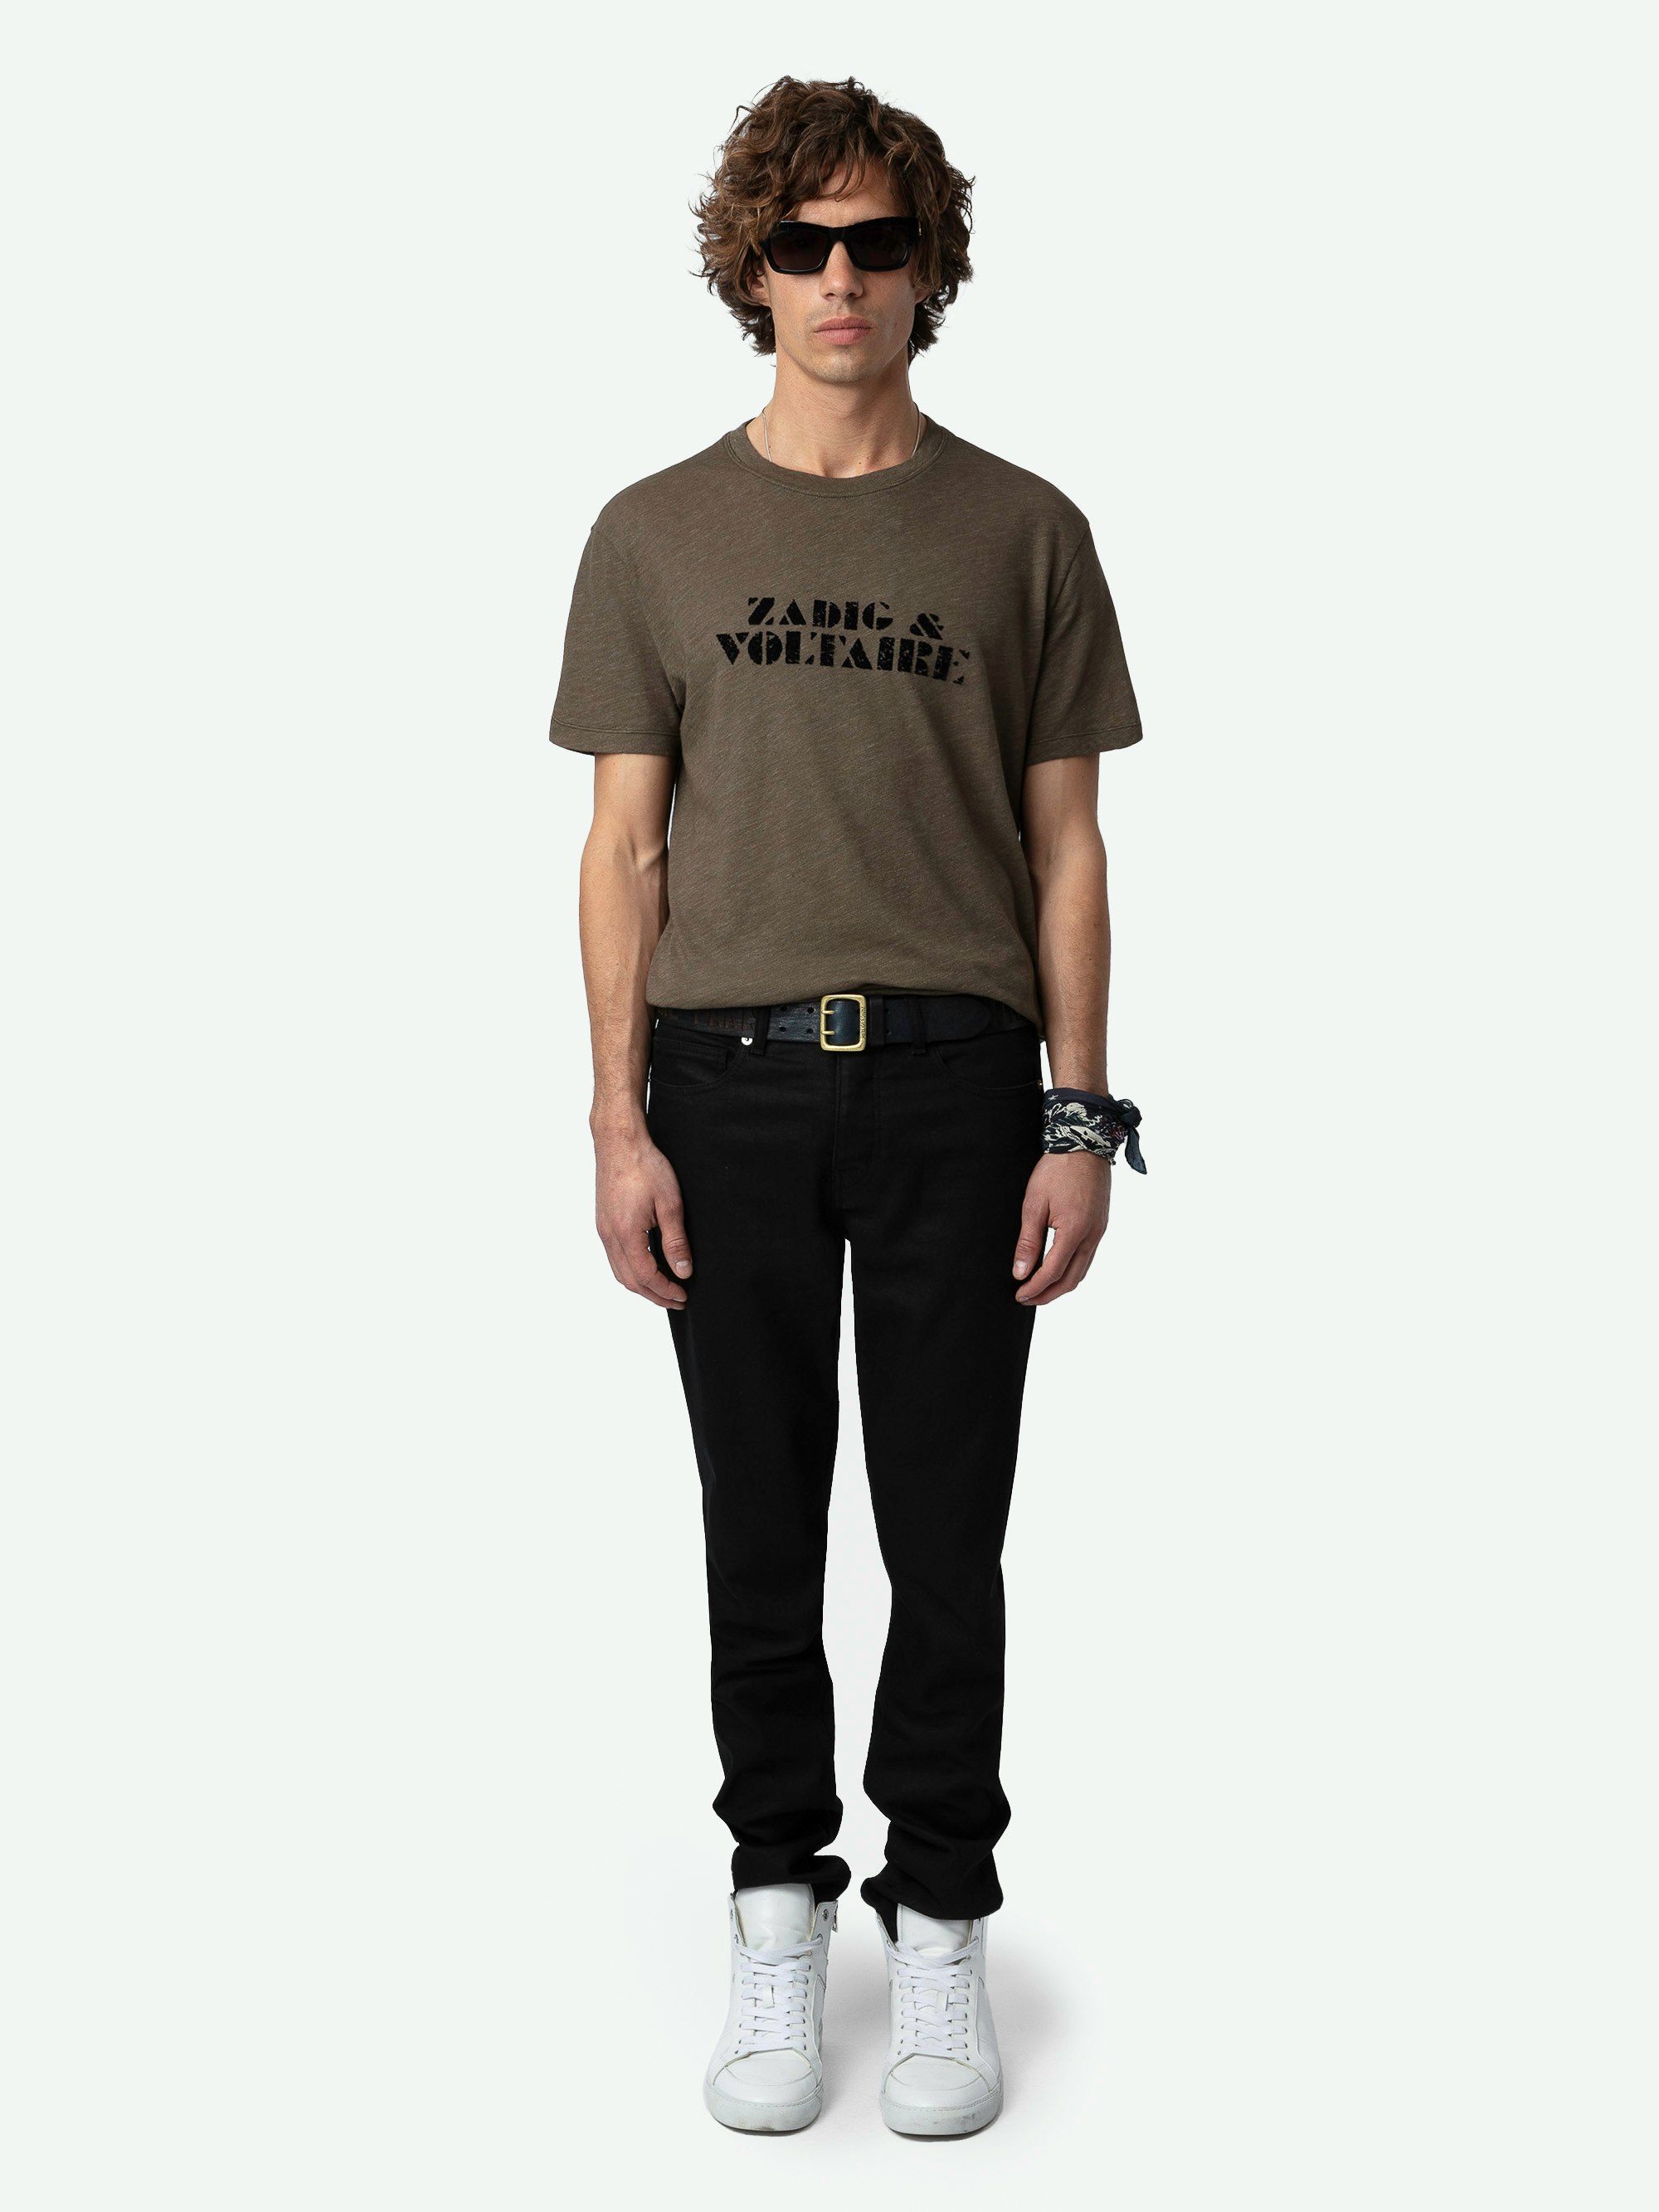 T-Shirt Tommy - Kurzärmeliges, braunes T-Shirt mit Marken-Signatur auf der Vorderseite.